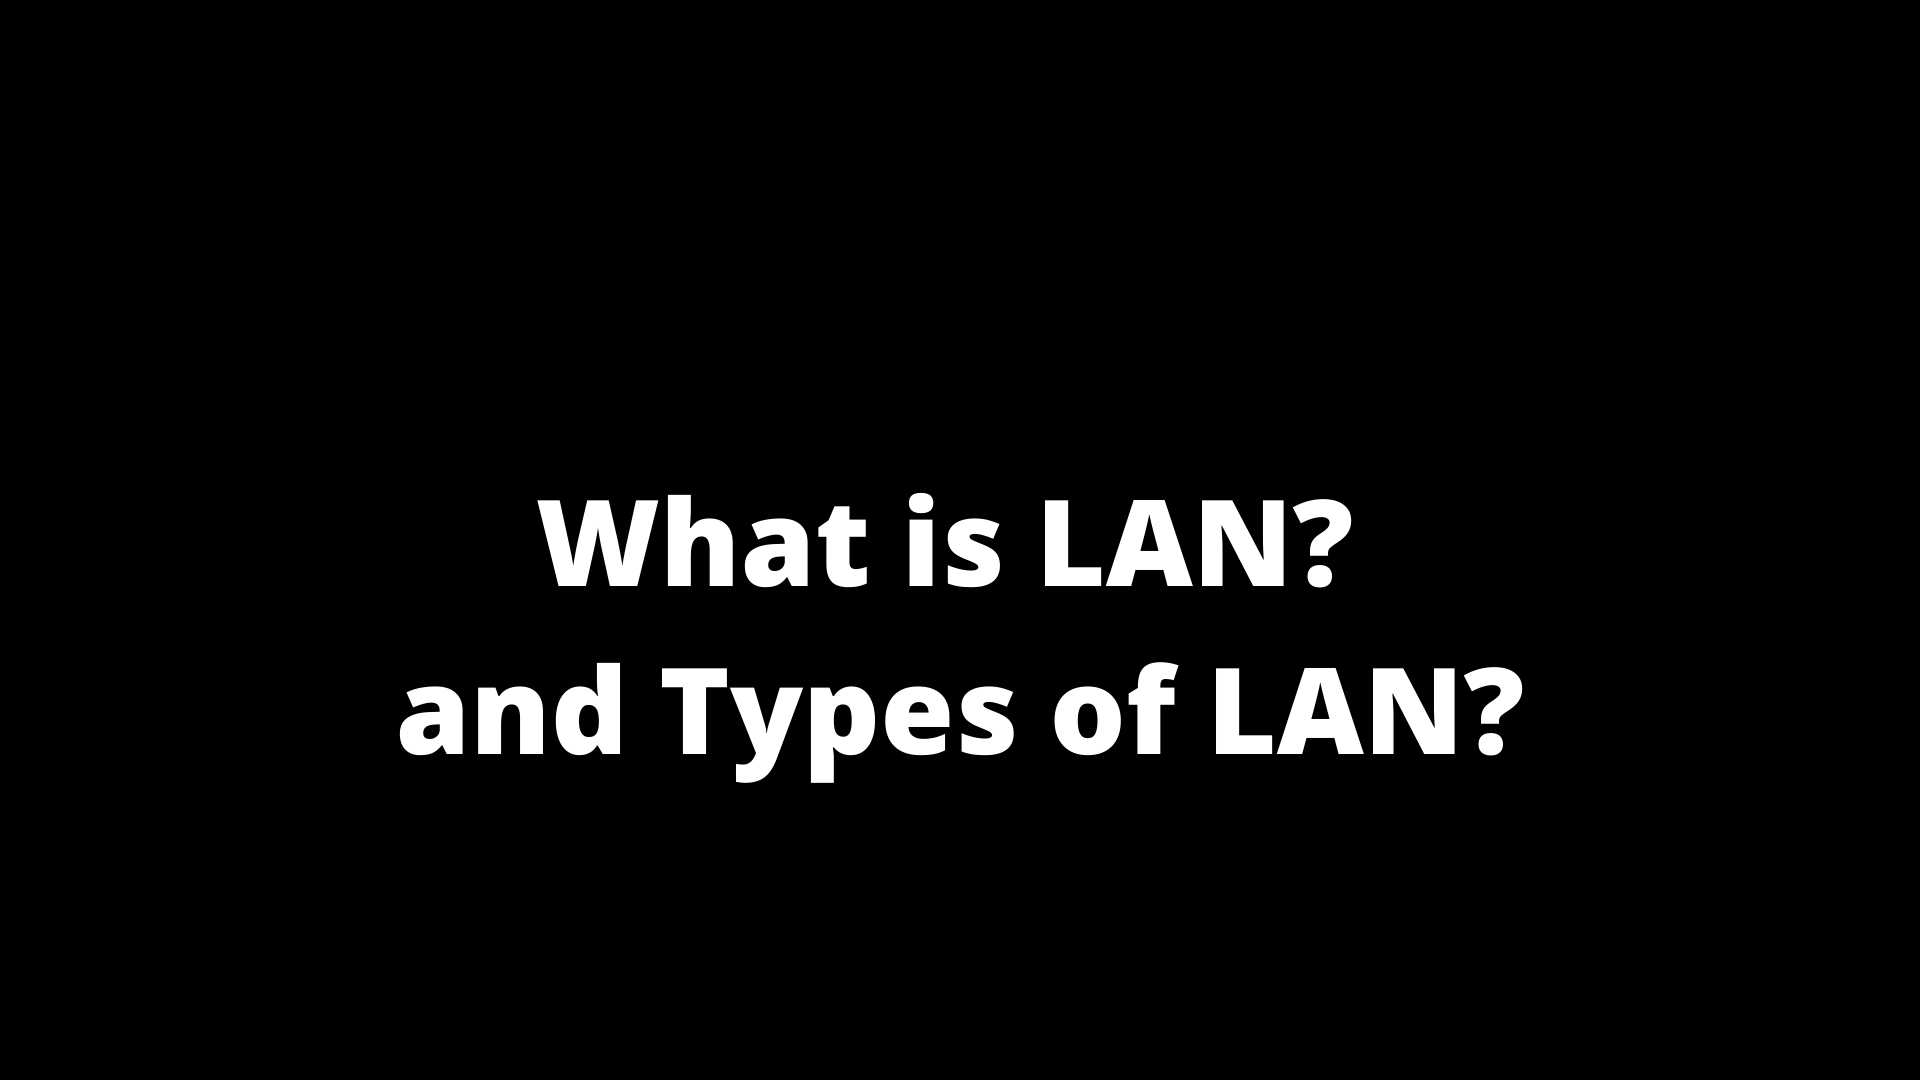 What is LAN